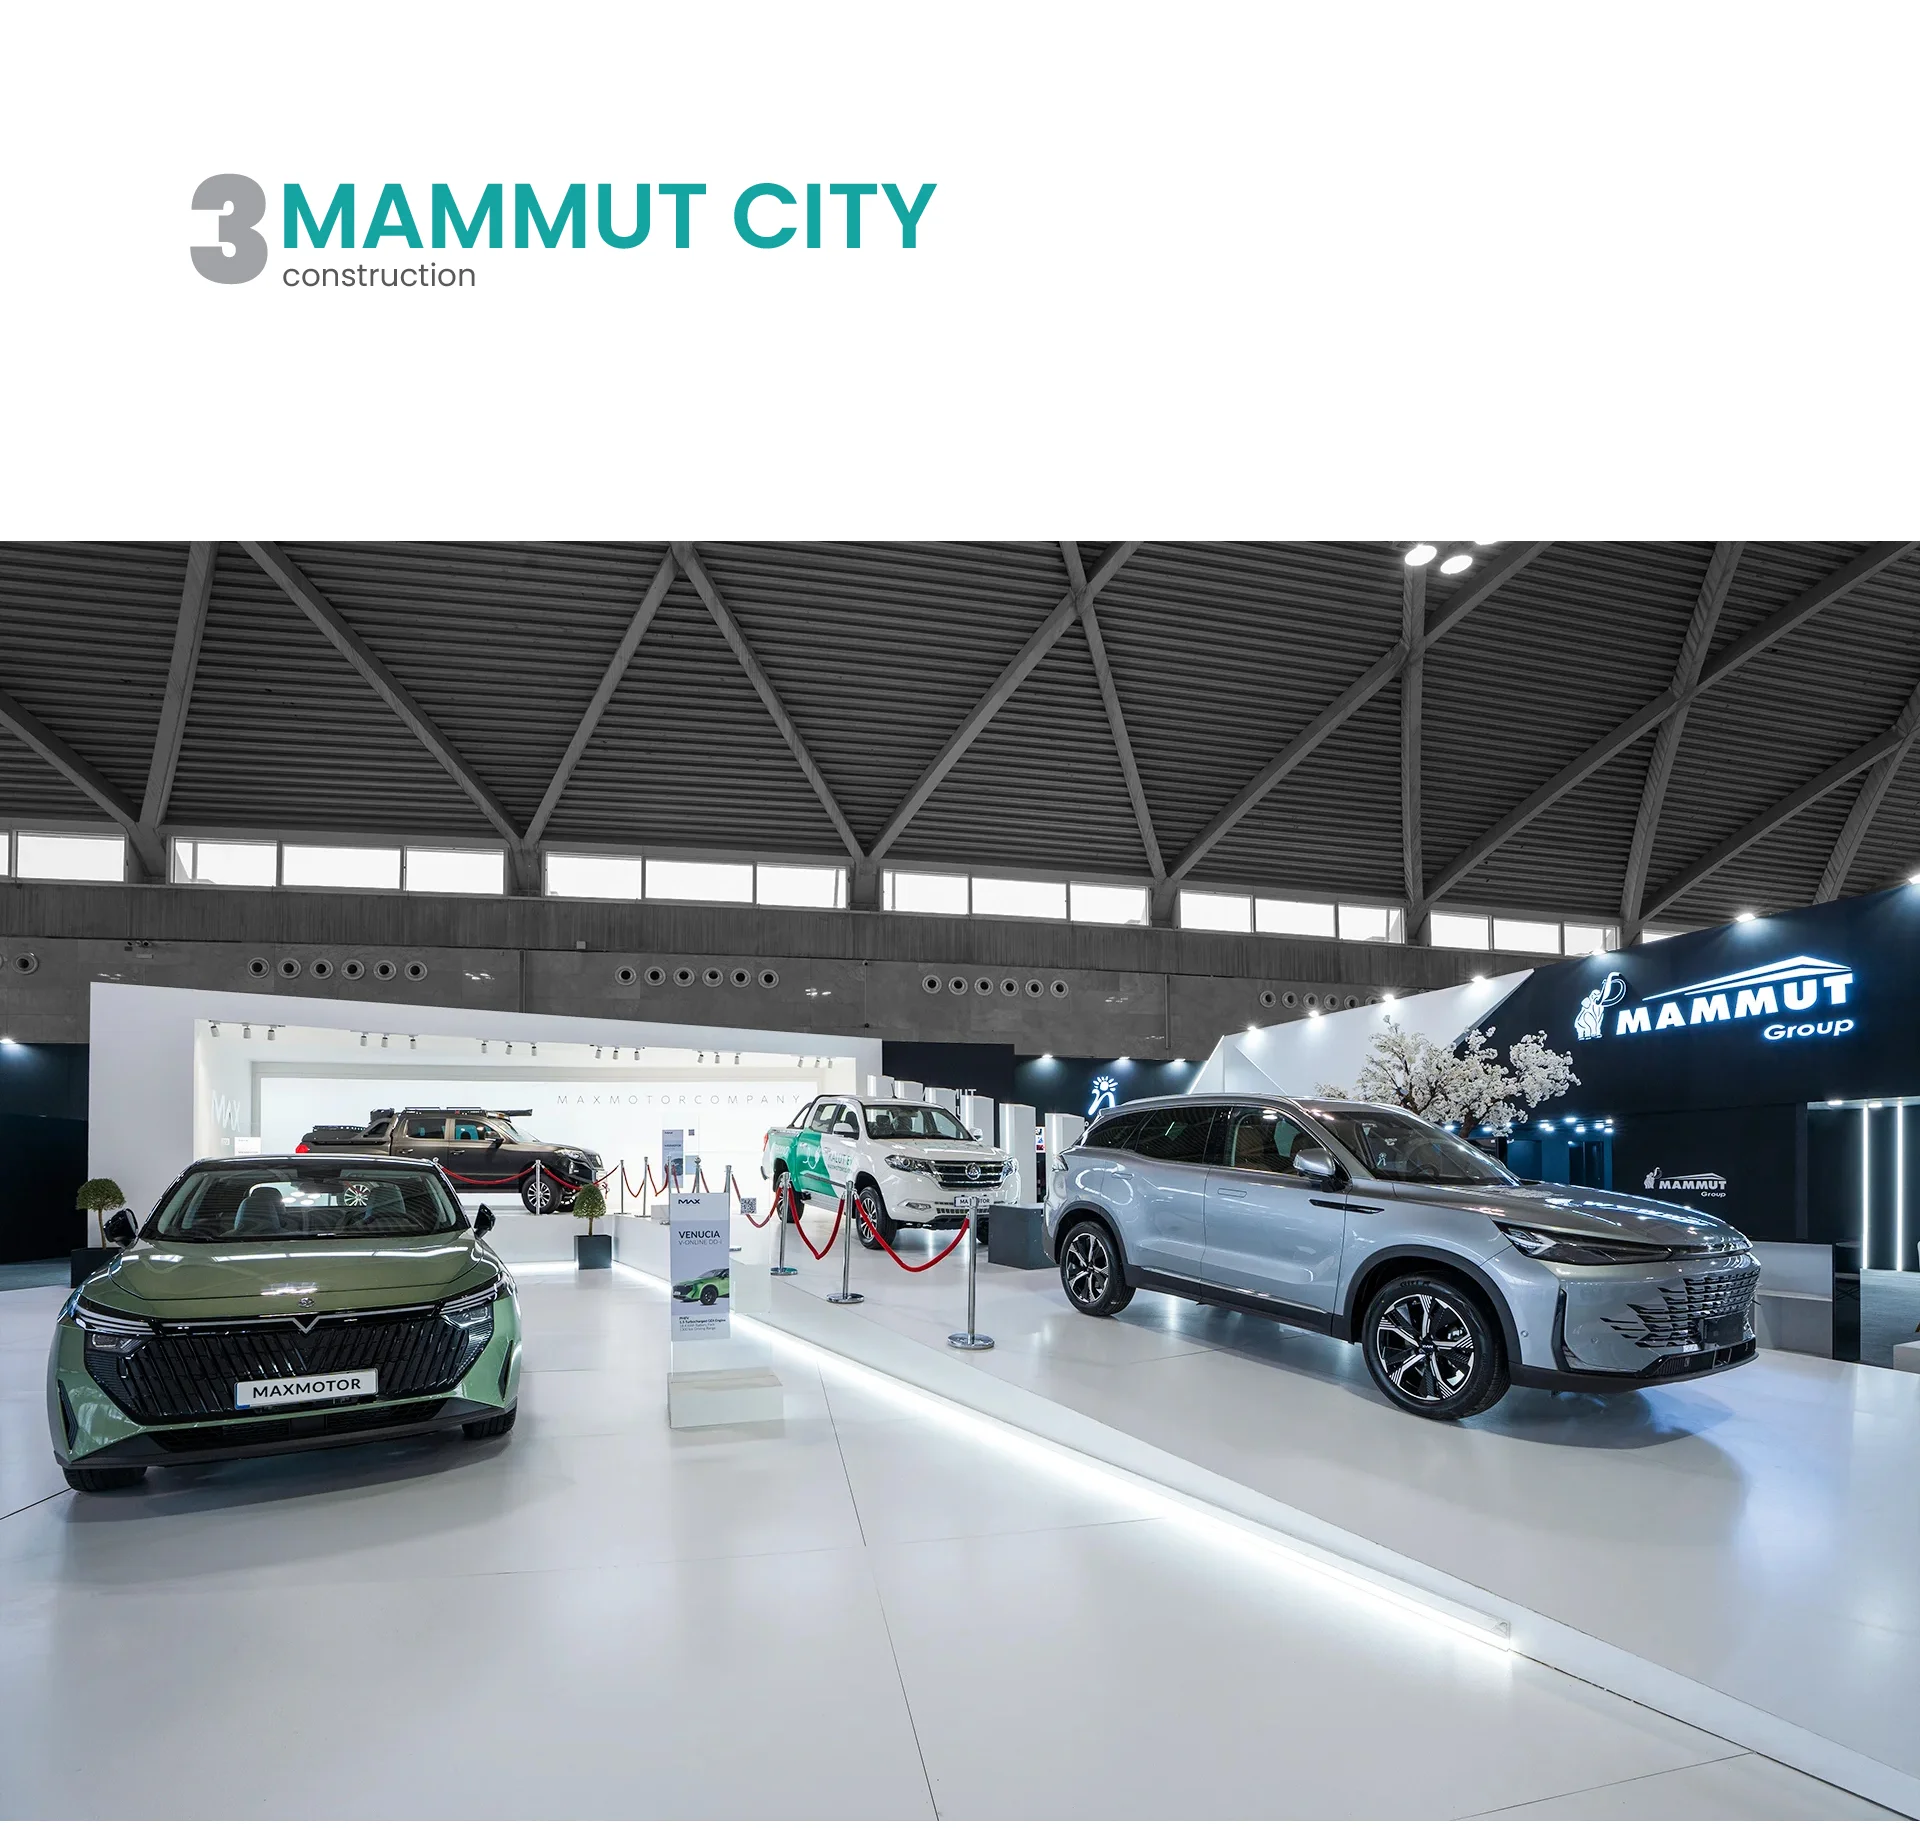   13 طراحی غرفه و غرفه سازی نمایشگاهی هولدینگ ماموت نمایشگاه خودرو شهر آفتاب 1402 